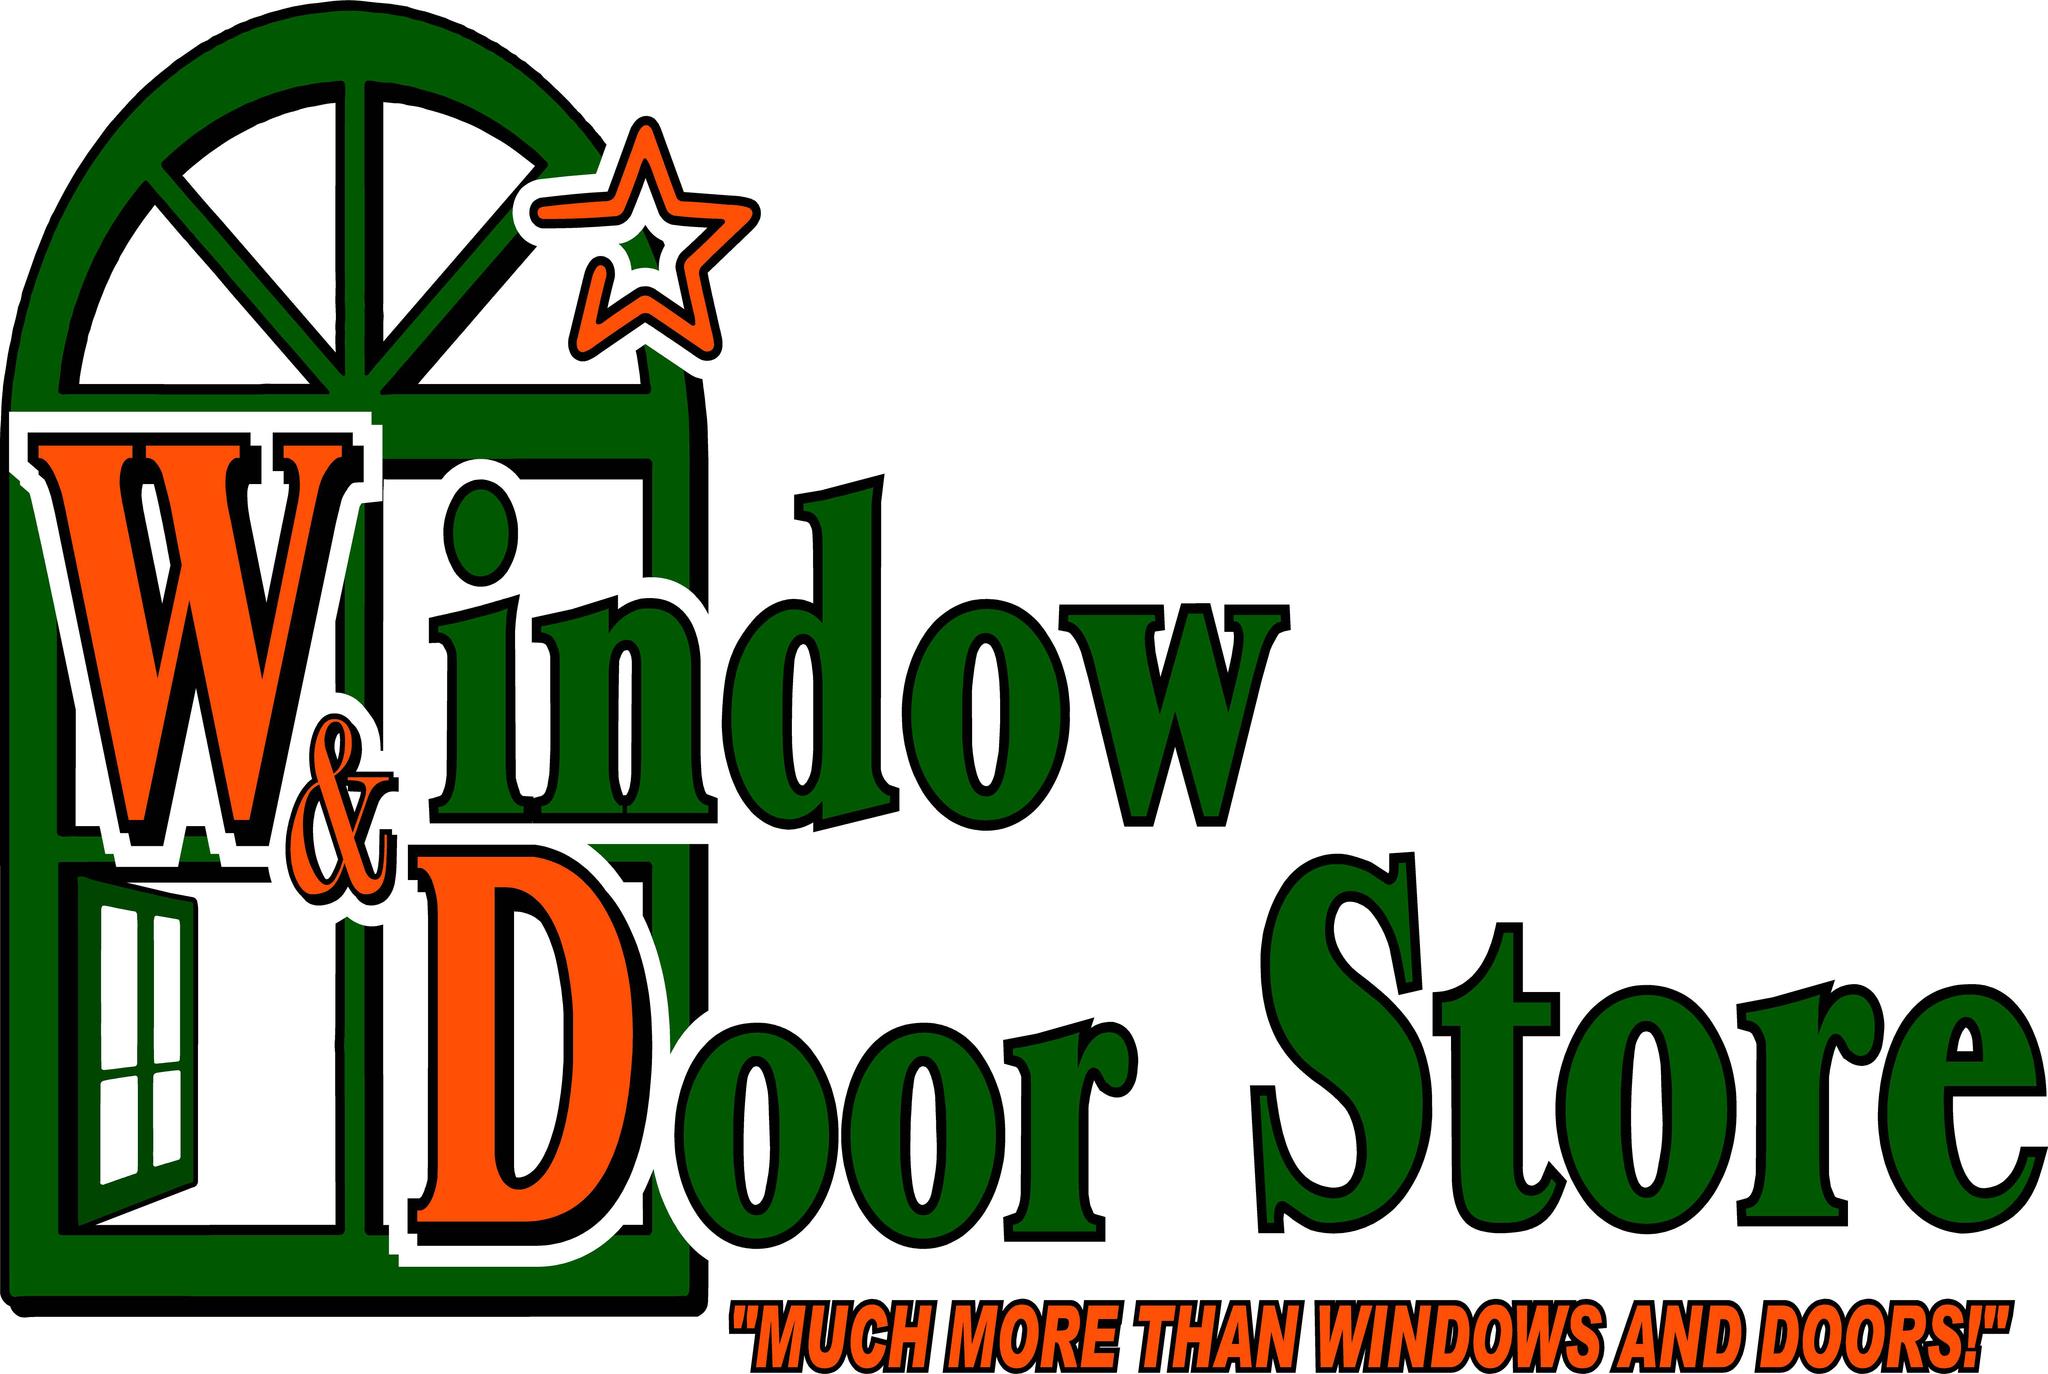 Business logo of Window & Door Store